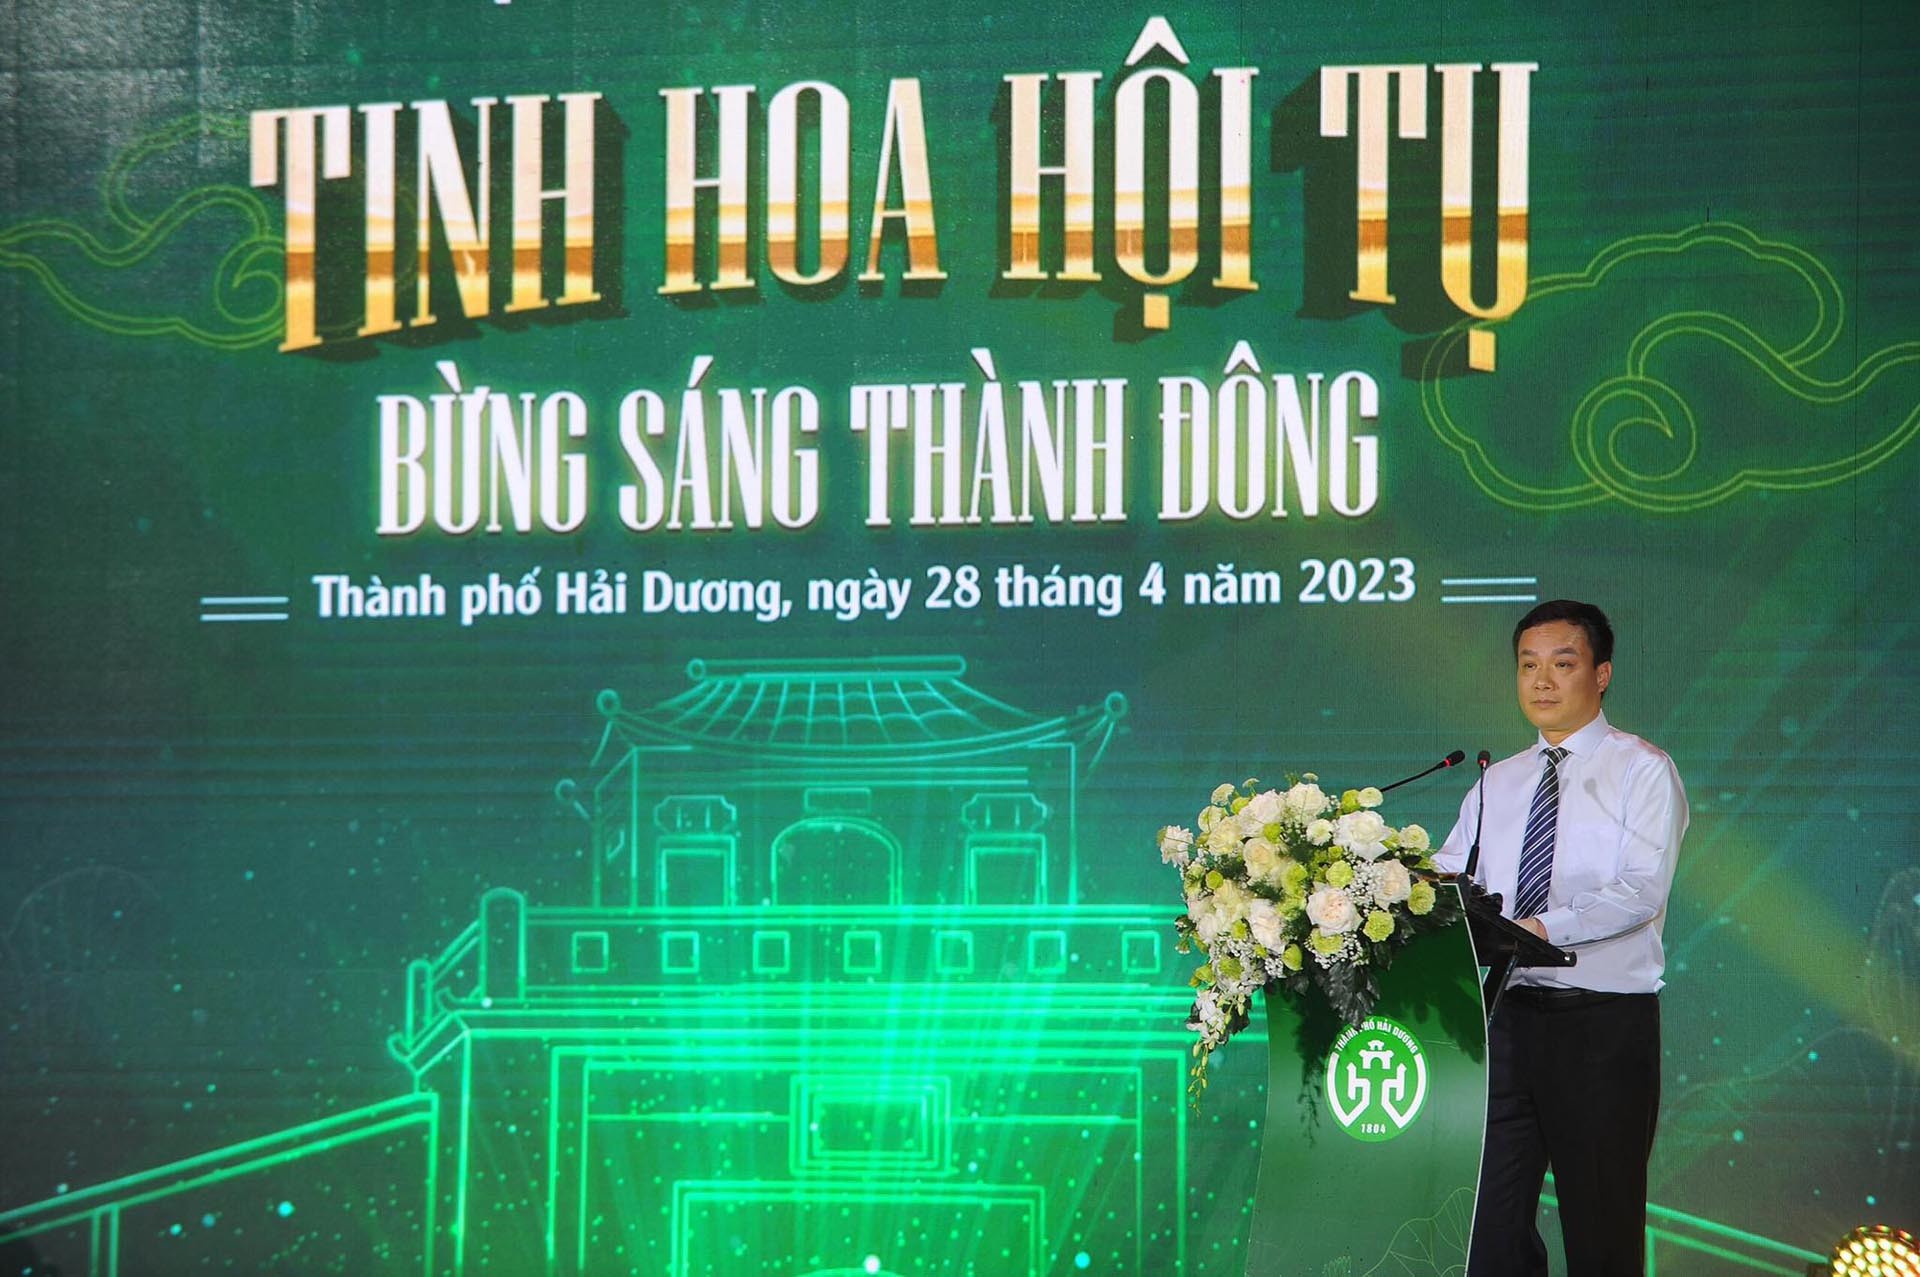 Phó Bí thư Tỉnh ủy, Chủ tịch UBND tỉnh Hải Dương Triệu Thế Hùng phát biểu tại lễ khai trương.